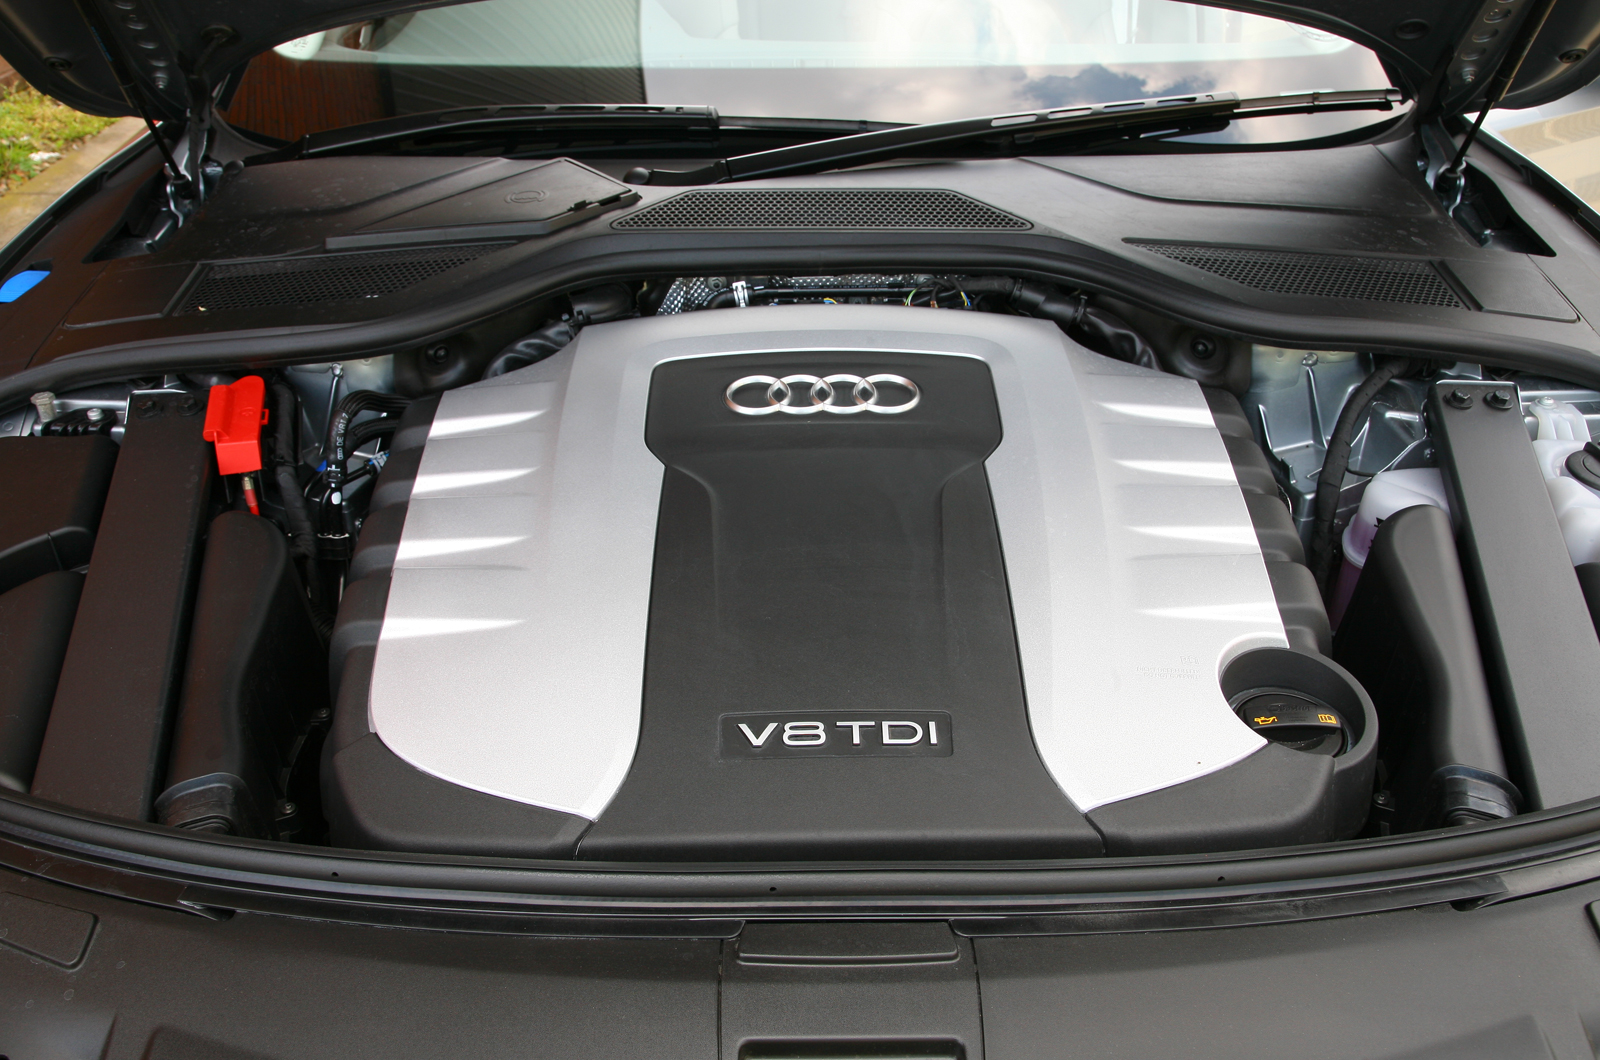 4.2-litre V8 Audi A8 diesel engine